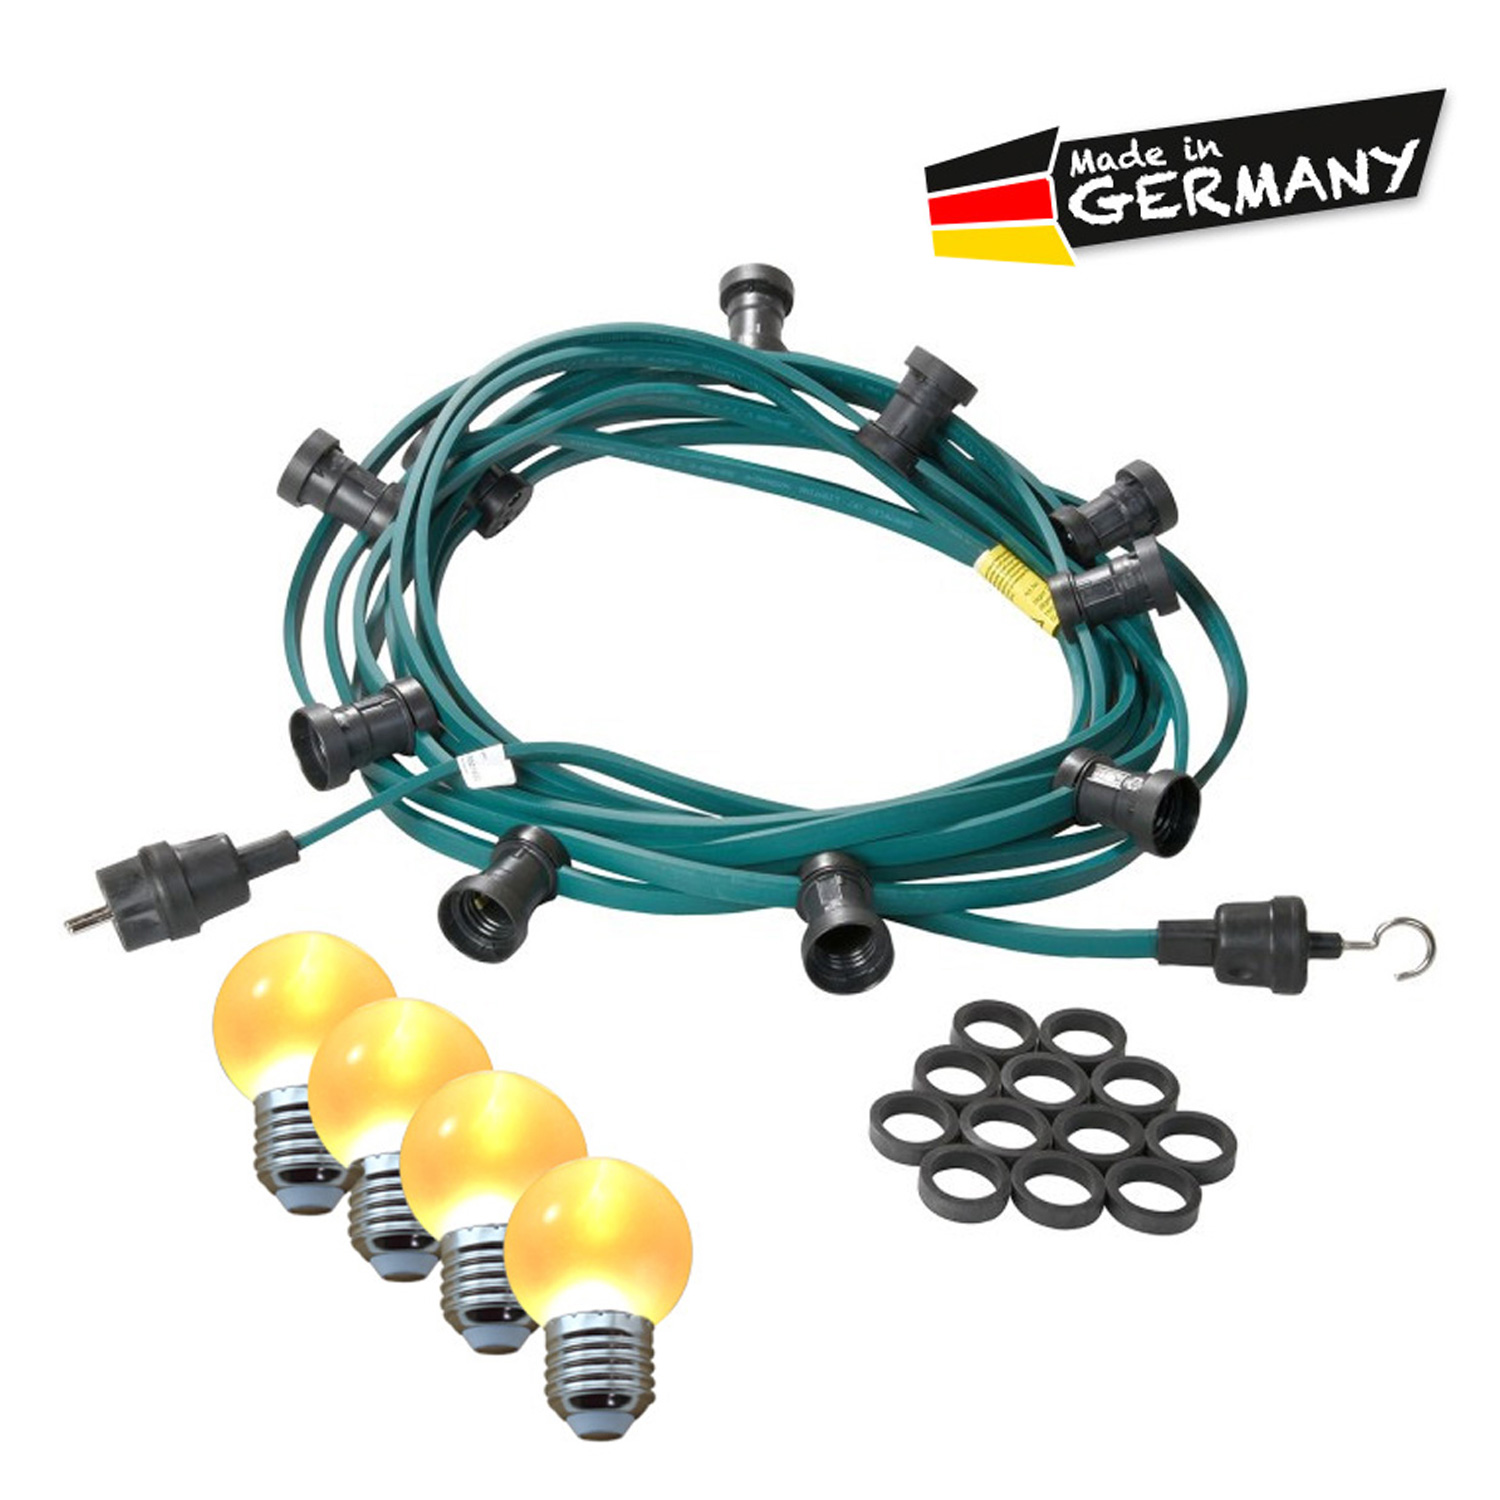 Illu-/Partylichterkette 10m | Außenlichterkette | Made in Germany | 10 x ultra-warmweisse LED Kugeln